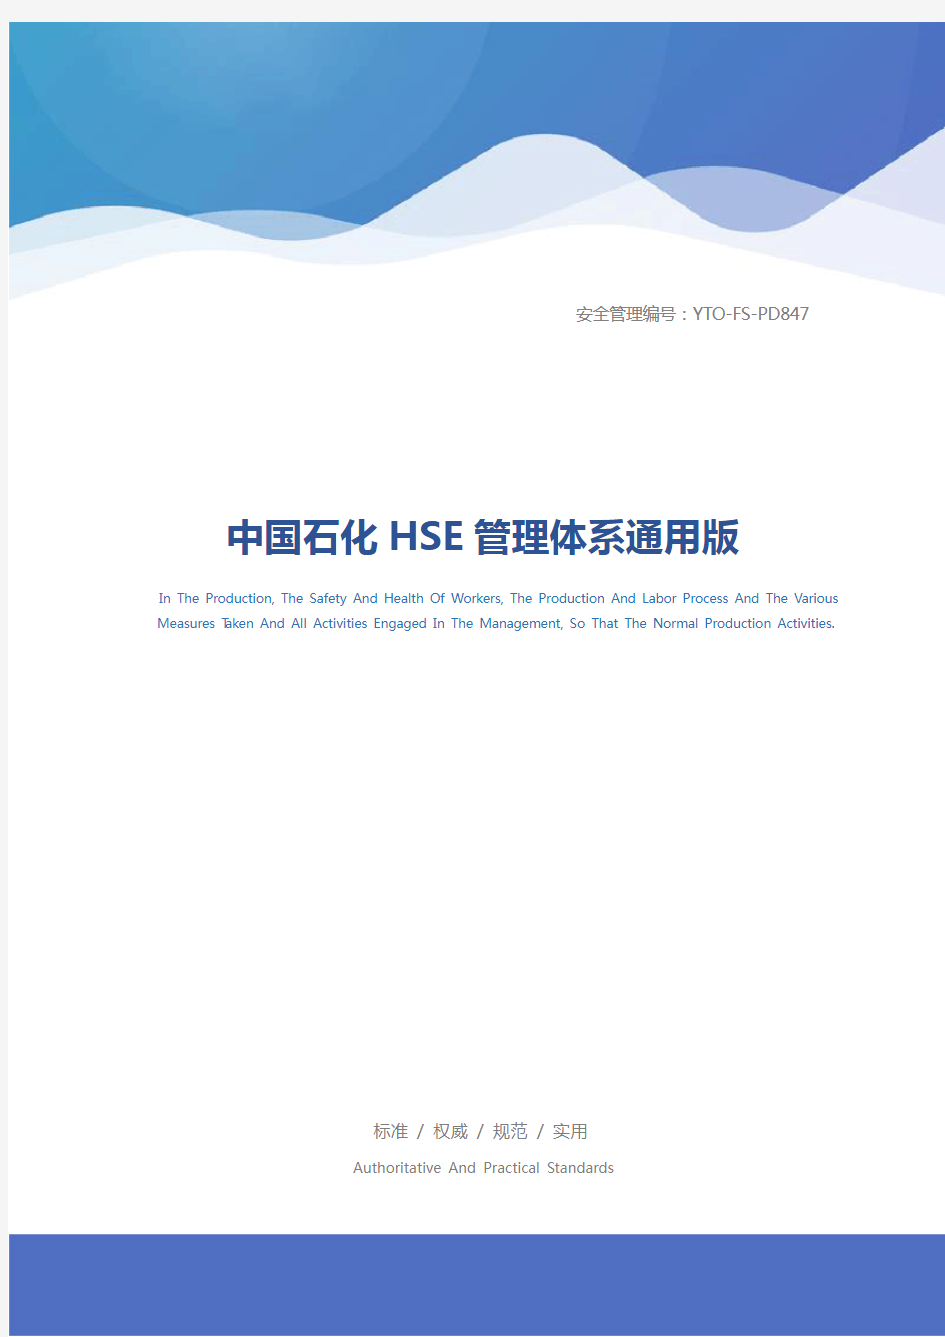 中国石化HSE管理体系通用版